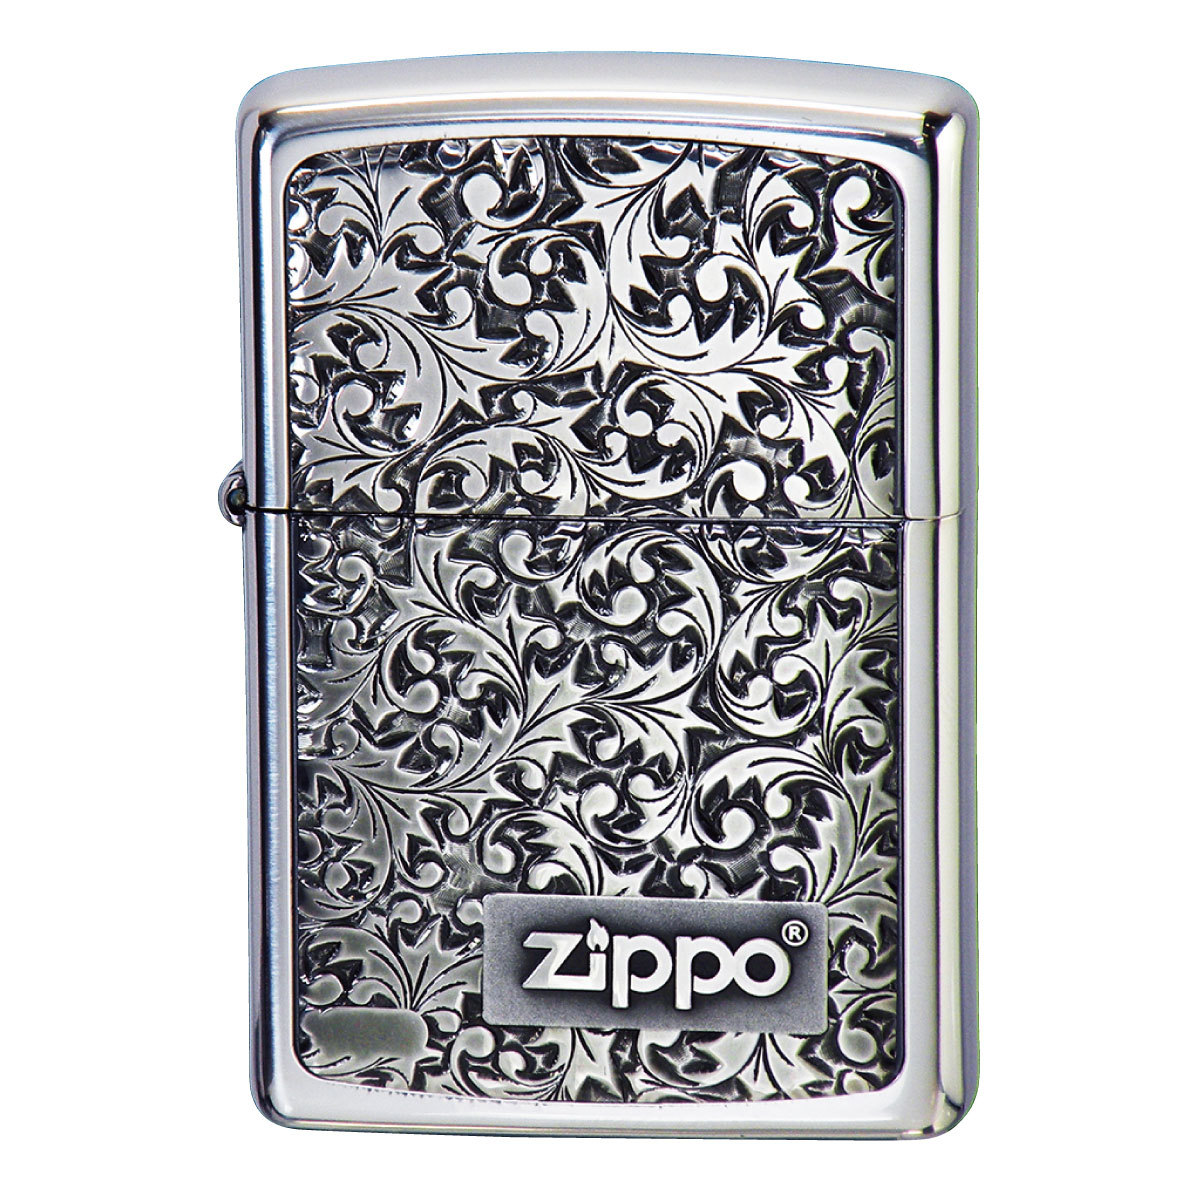 ジッポライター zippo ライター 名入れ かっこいい ブランド 高級 